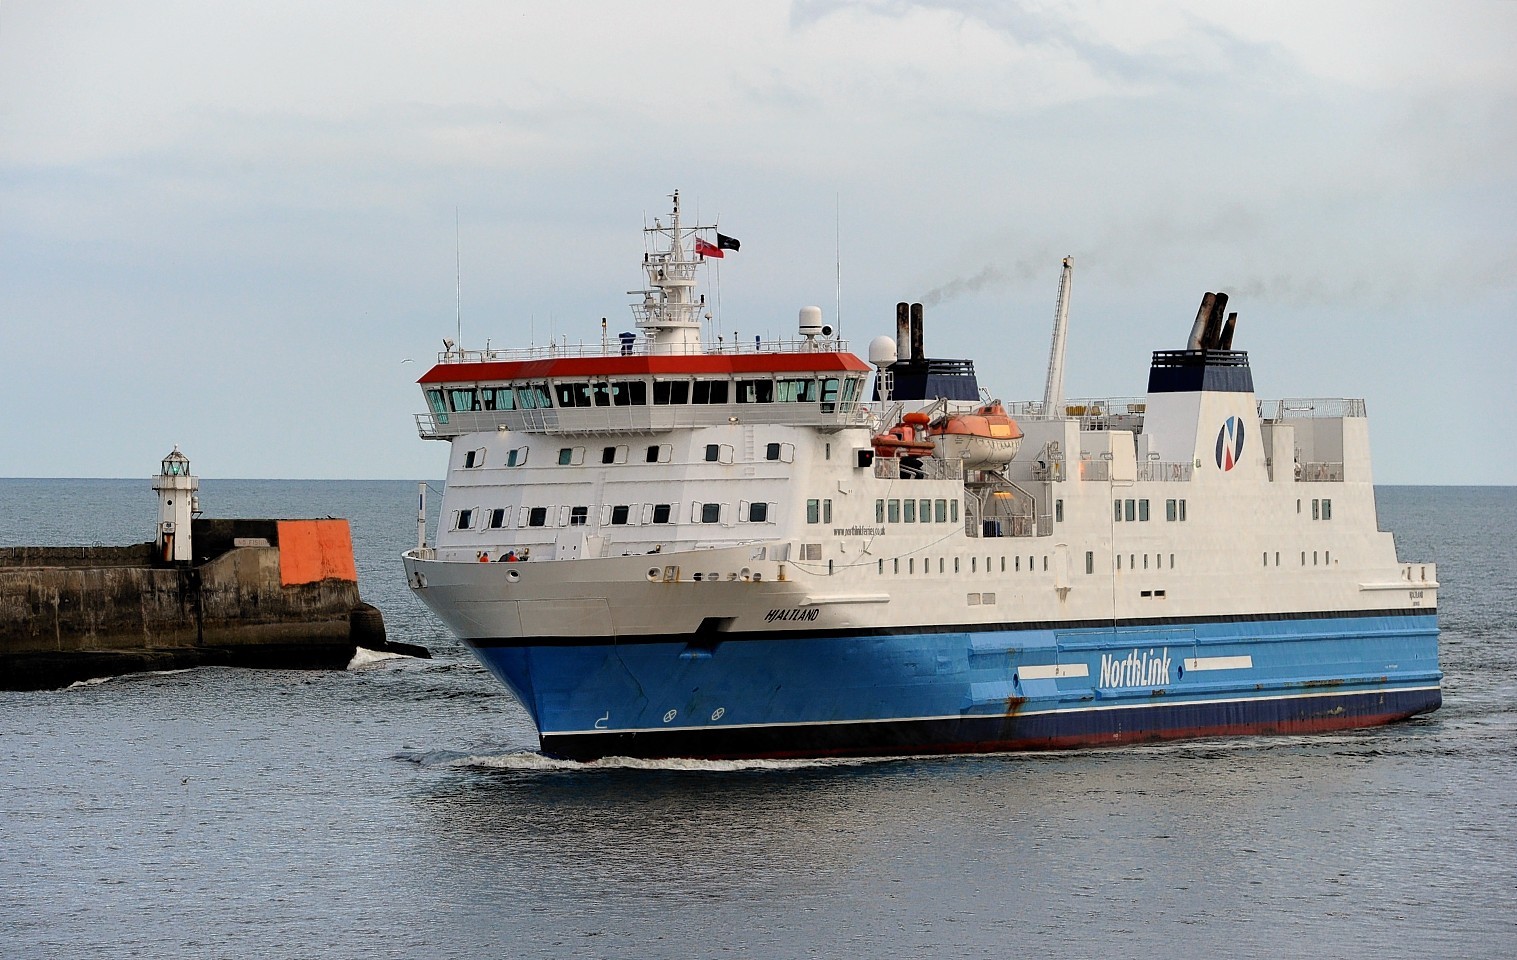 Northlink Hjaltland ferry